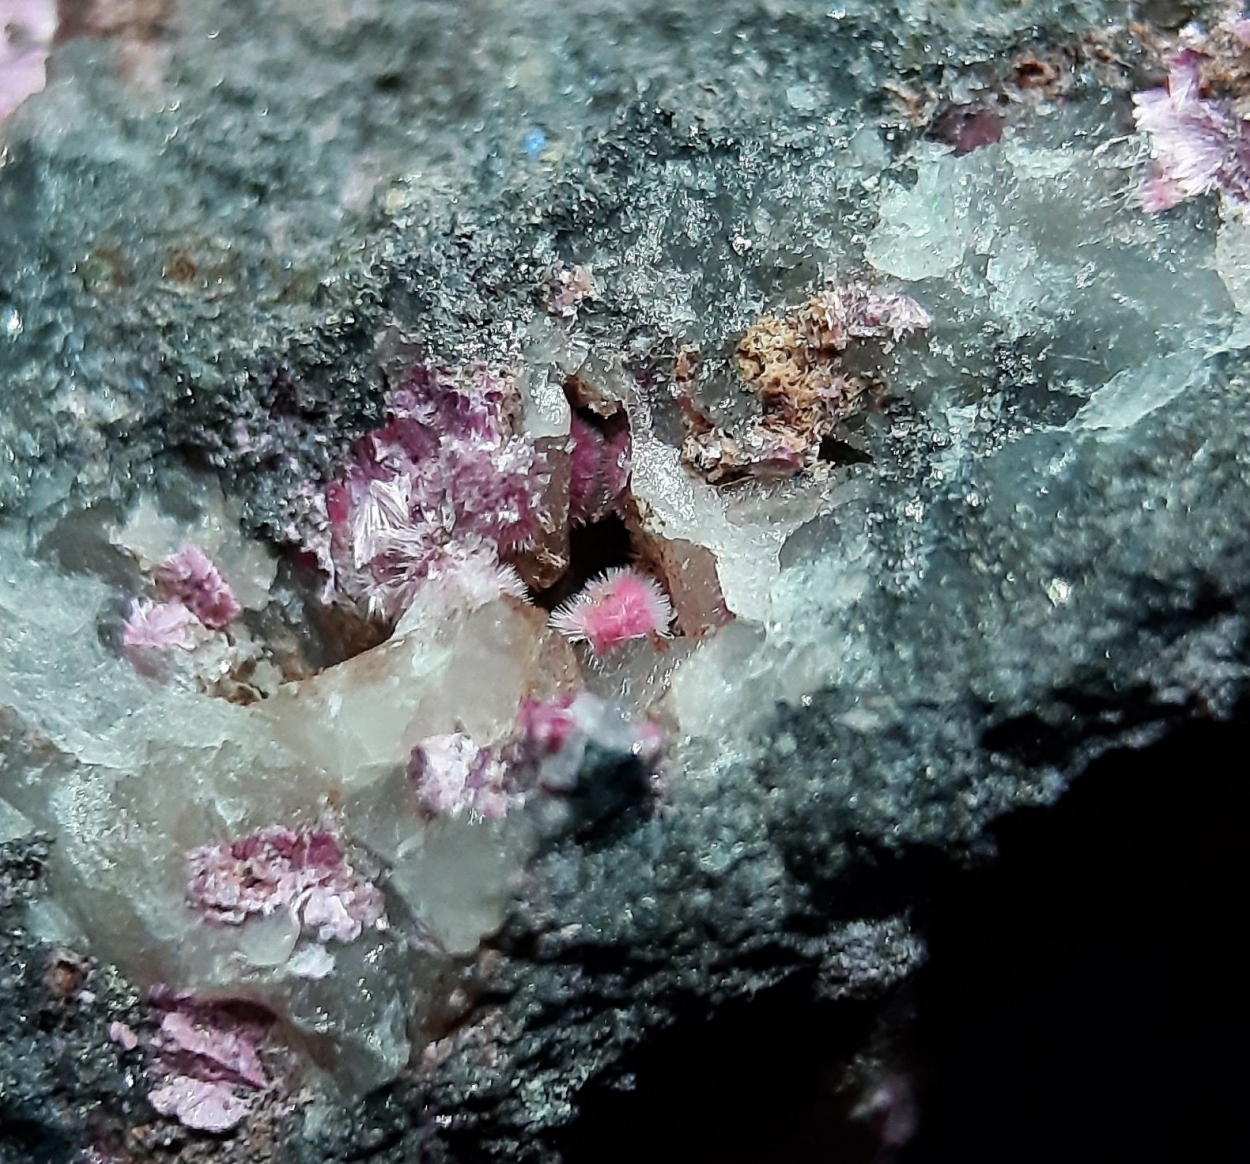 Cobaltkoritnigite & Erythrite